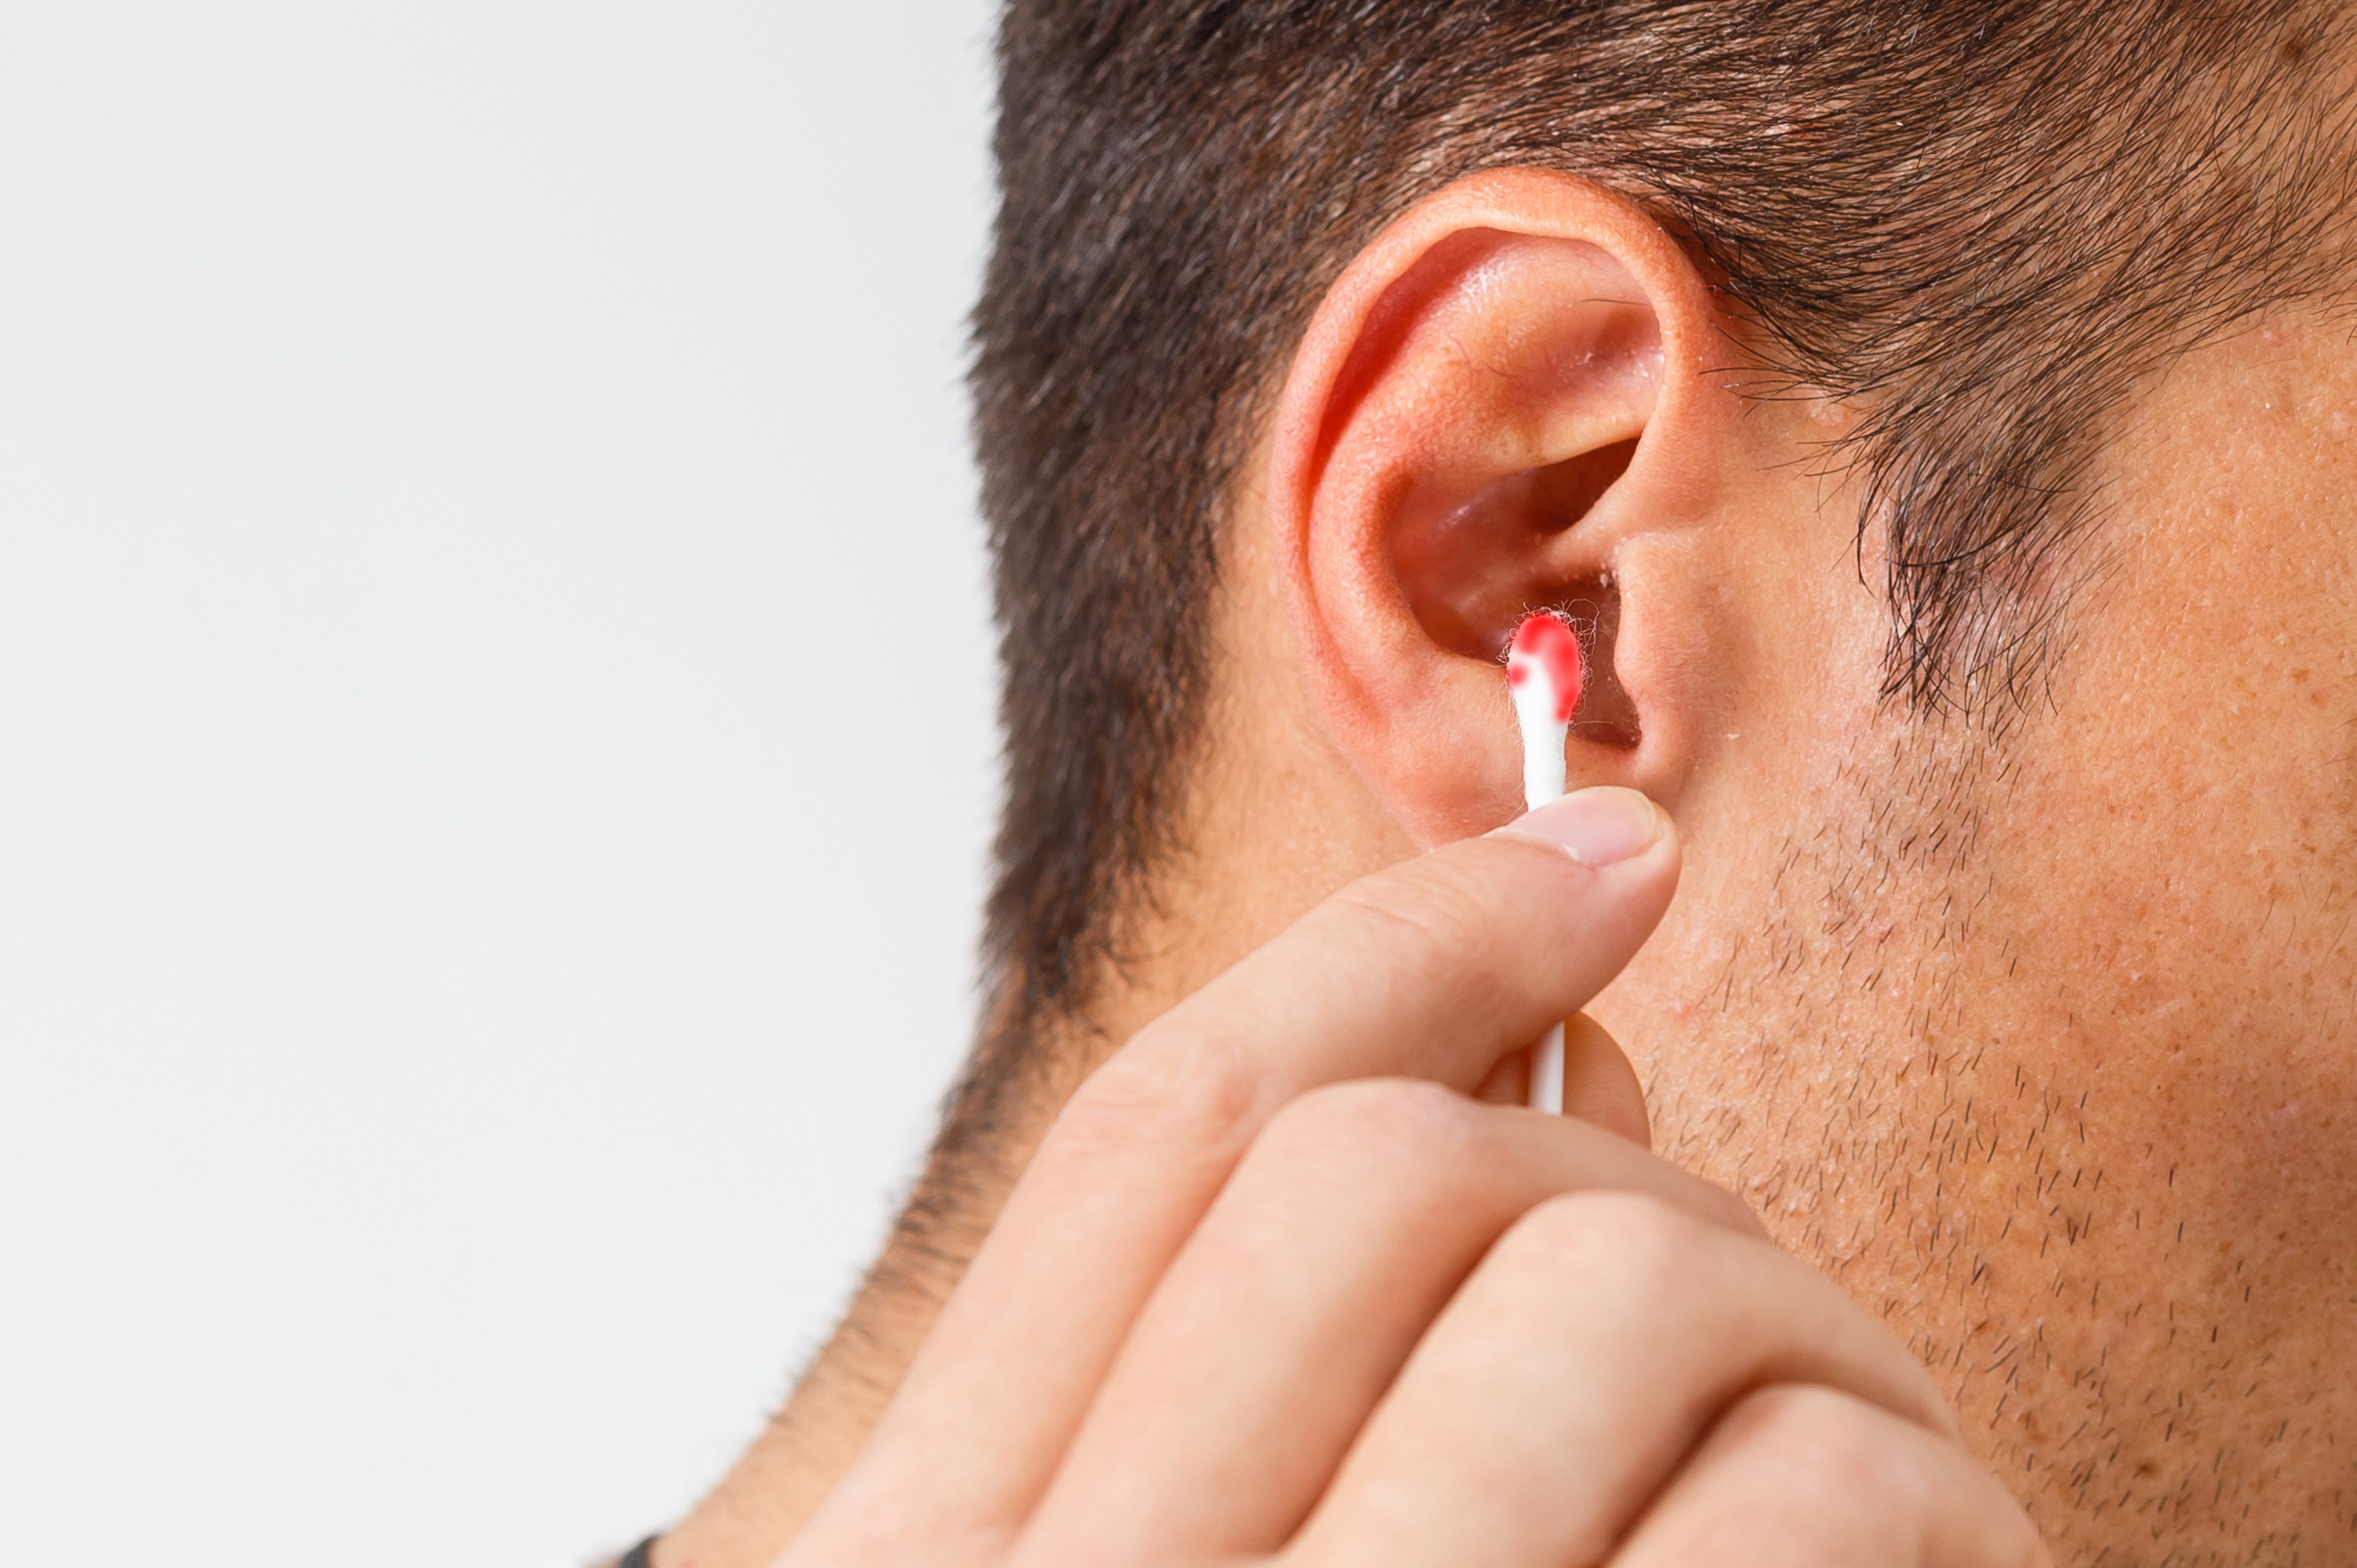 Comment enlever un bouchon d'oreille ? Tout seul ? Symptômes